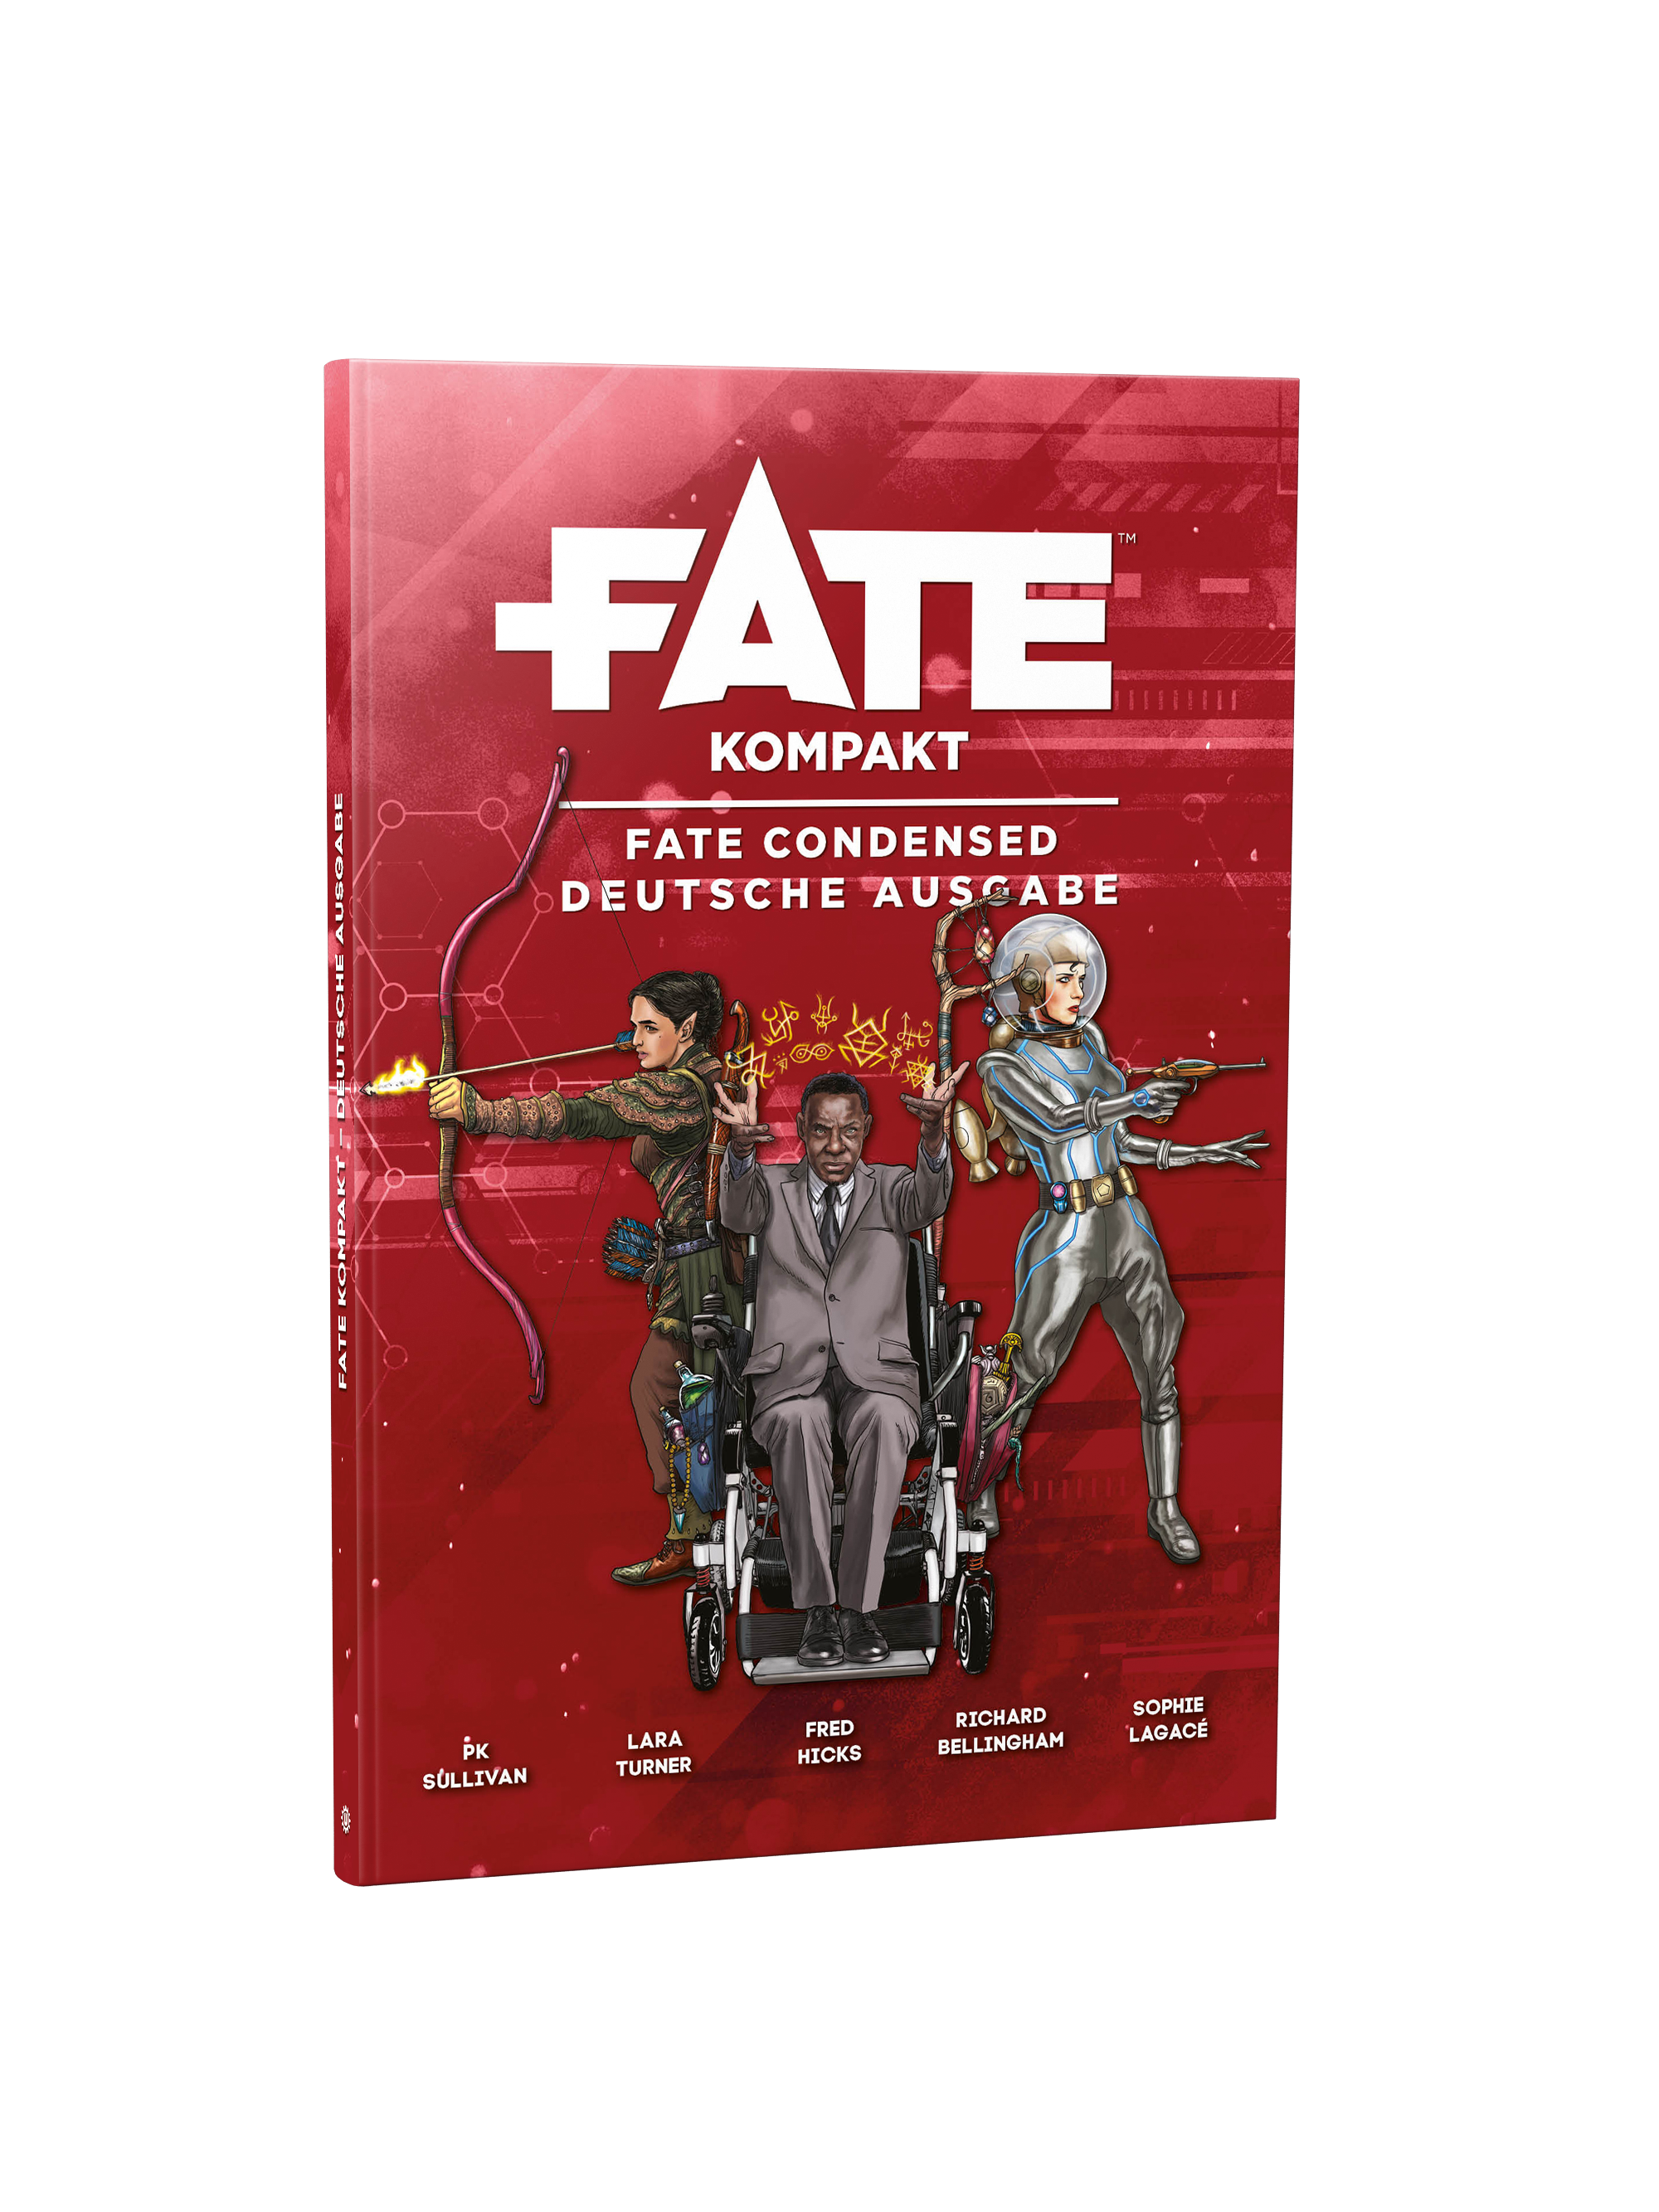 Fate Kompakt (orig. Fate Condensed)